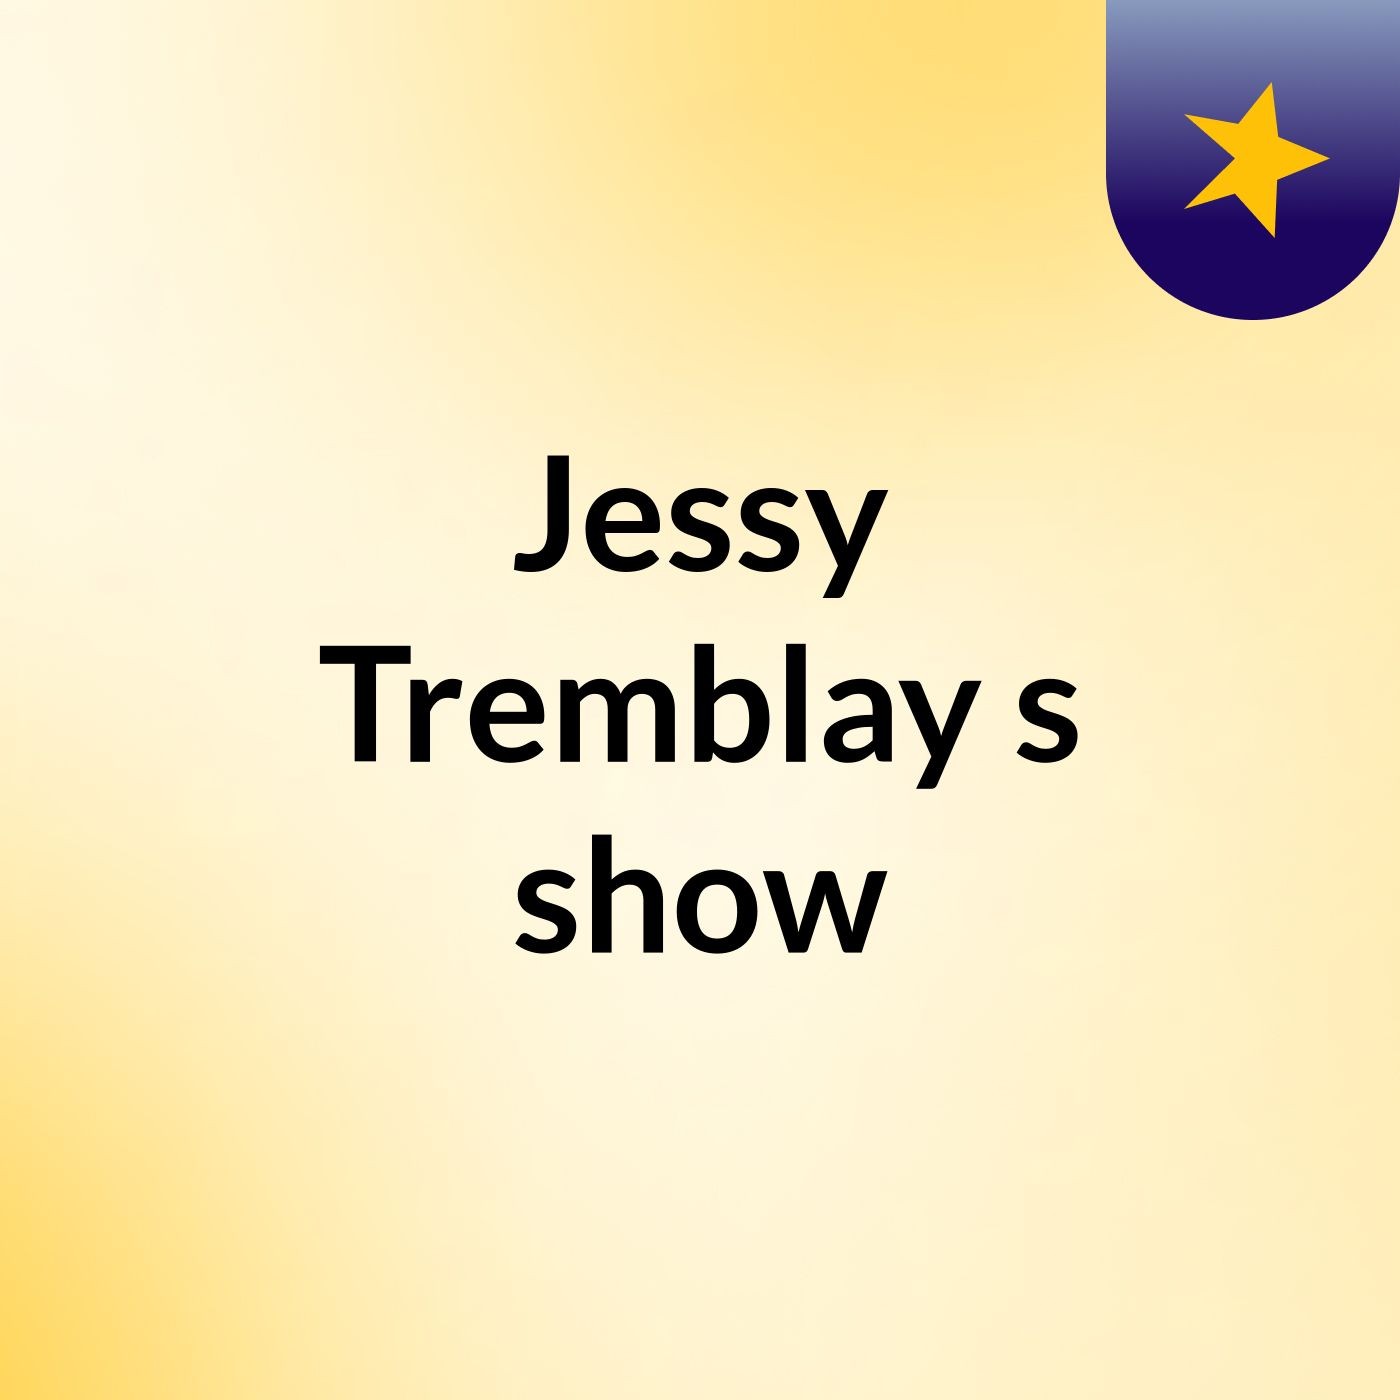 Jessy Tremblay's show